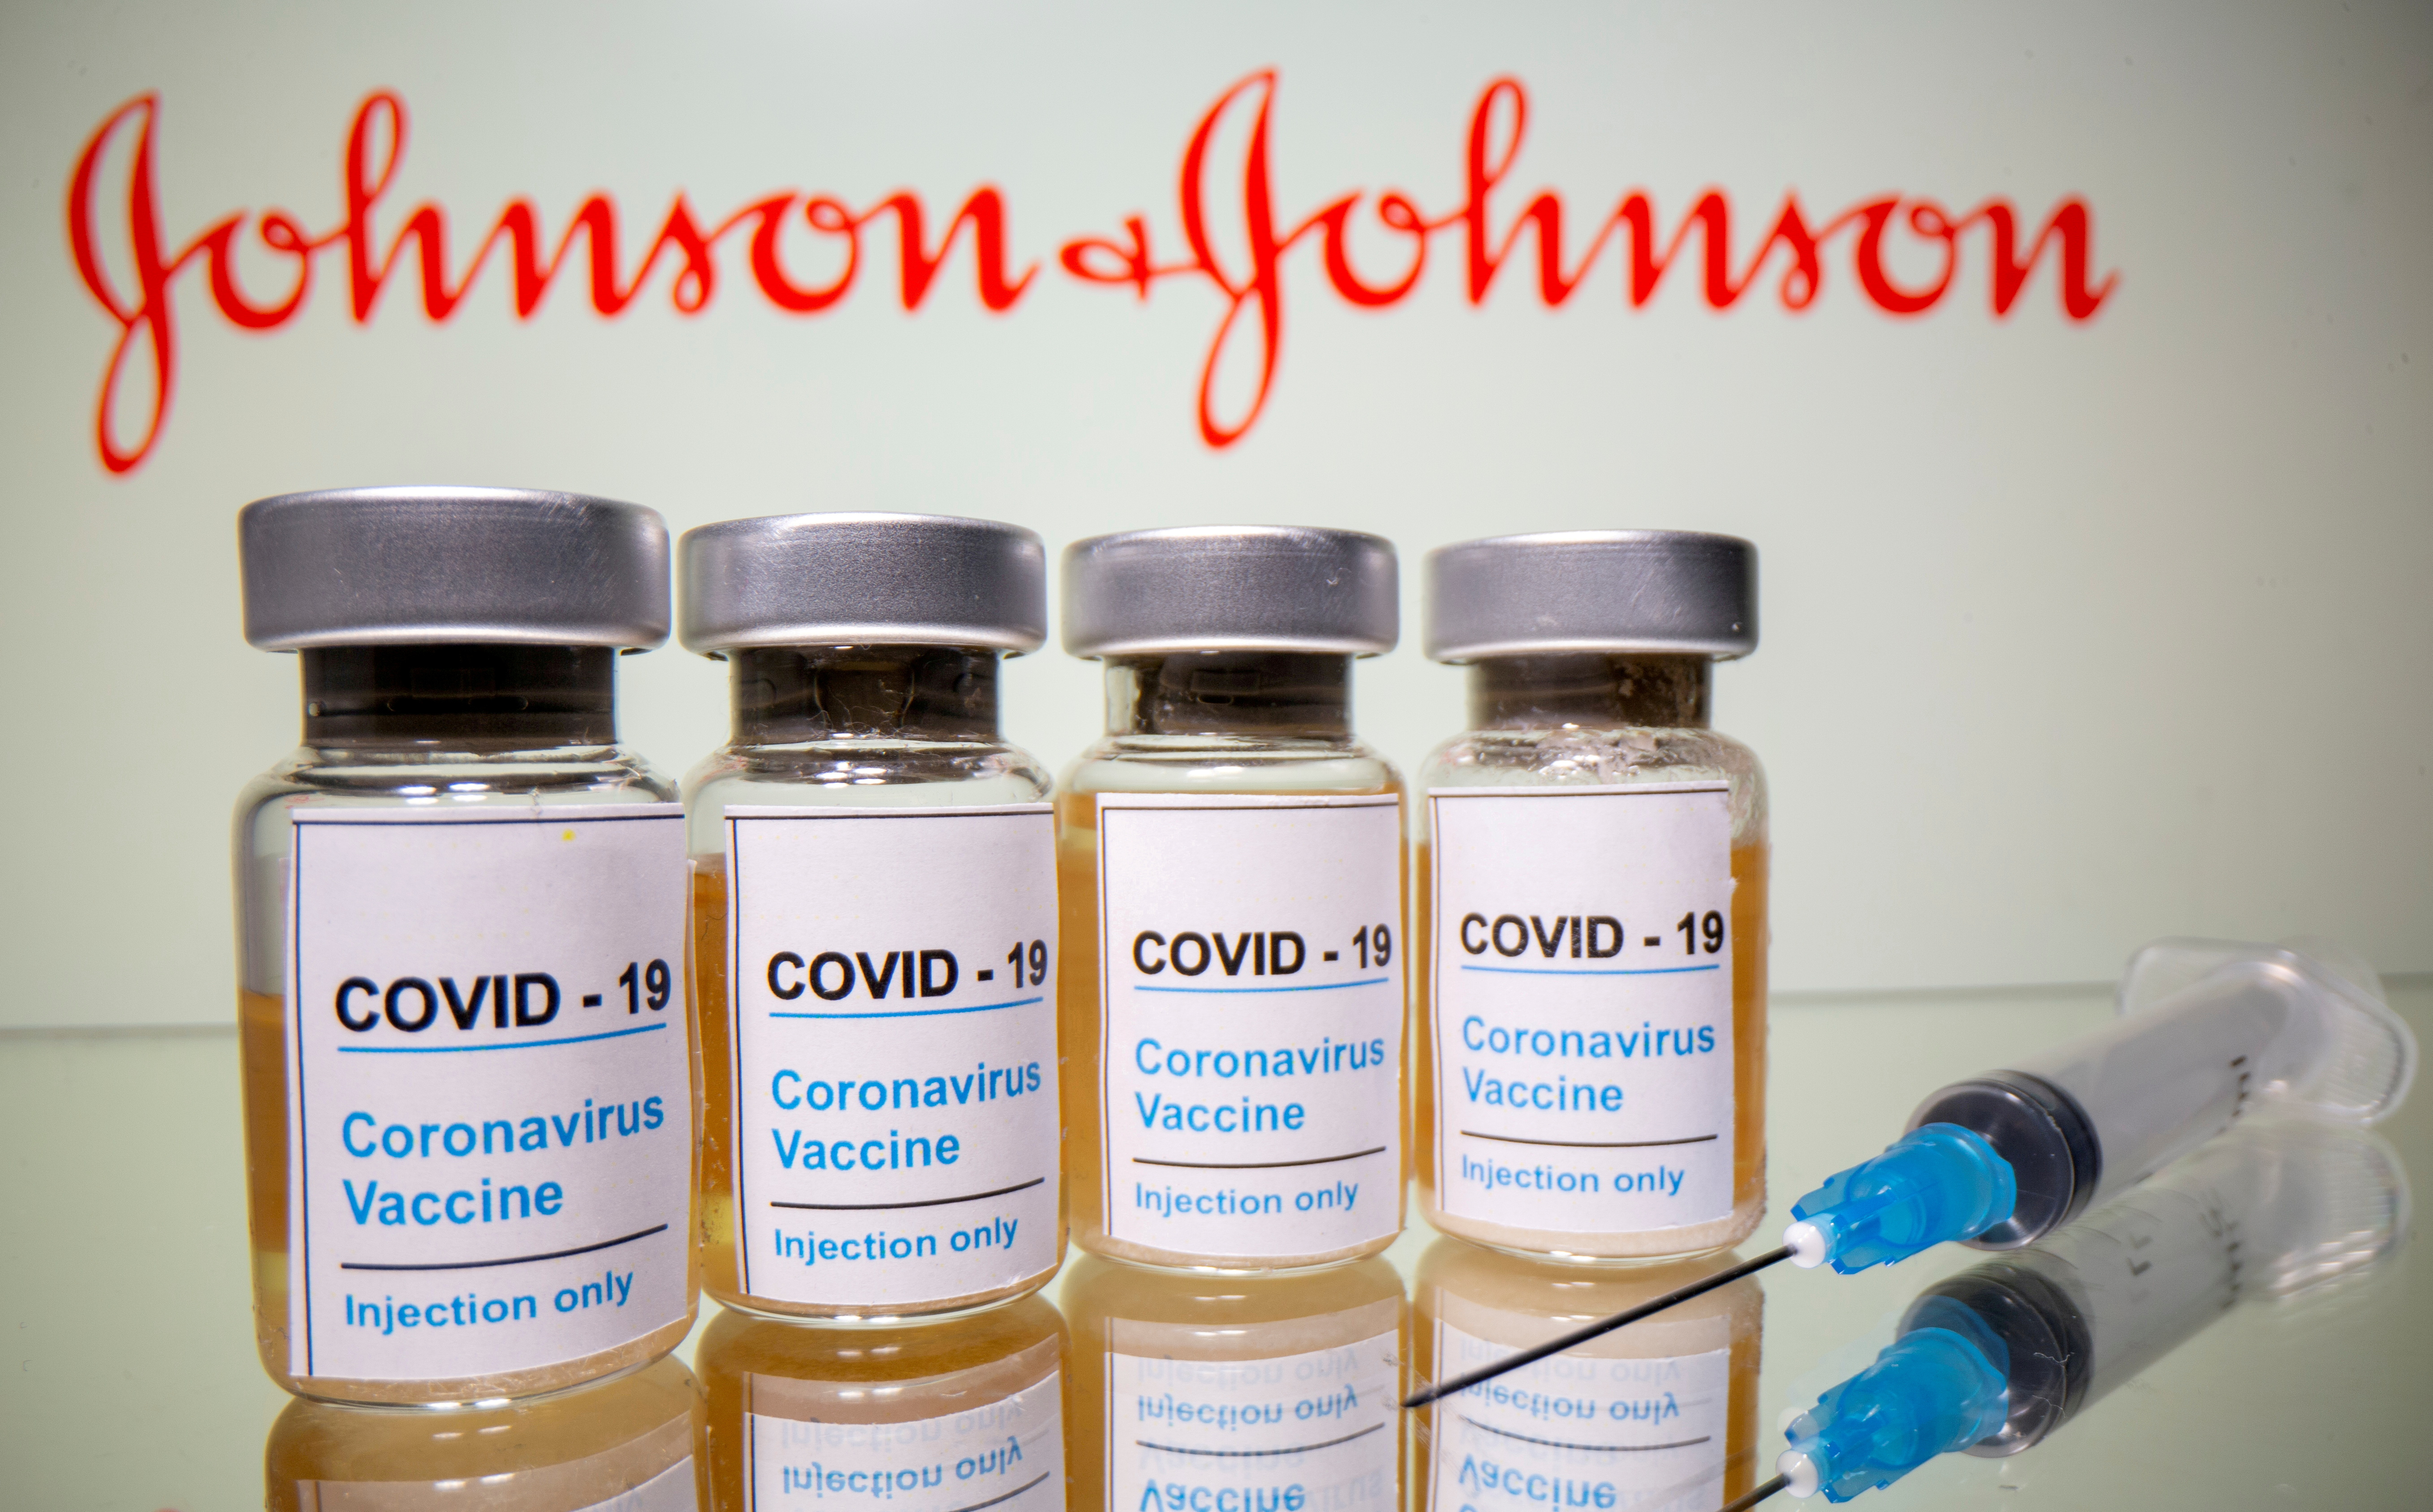 Where is astrazeneca covid vaccine manufactured